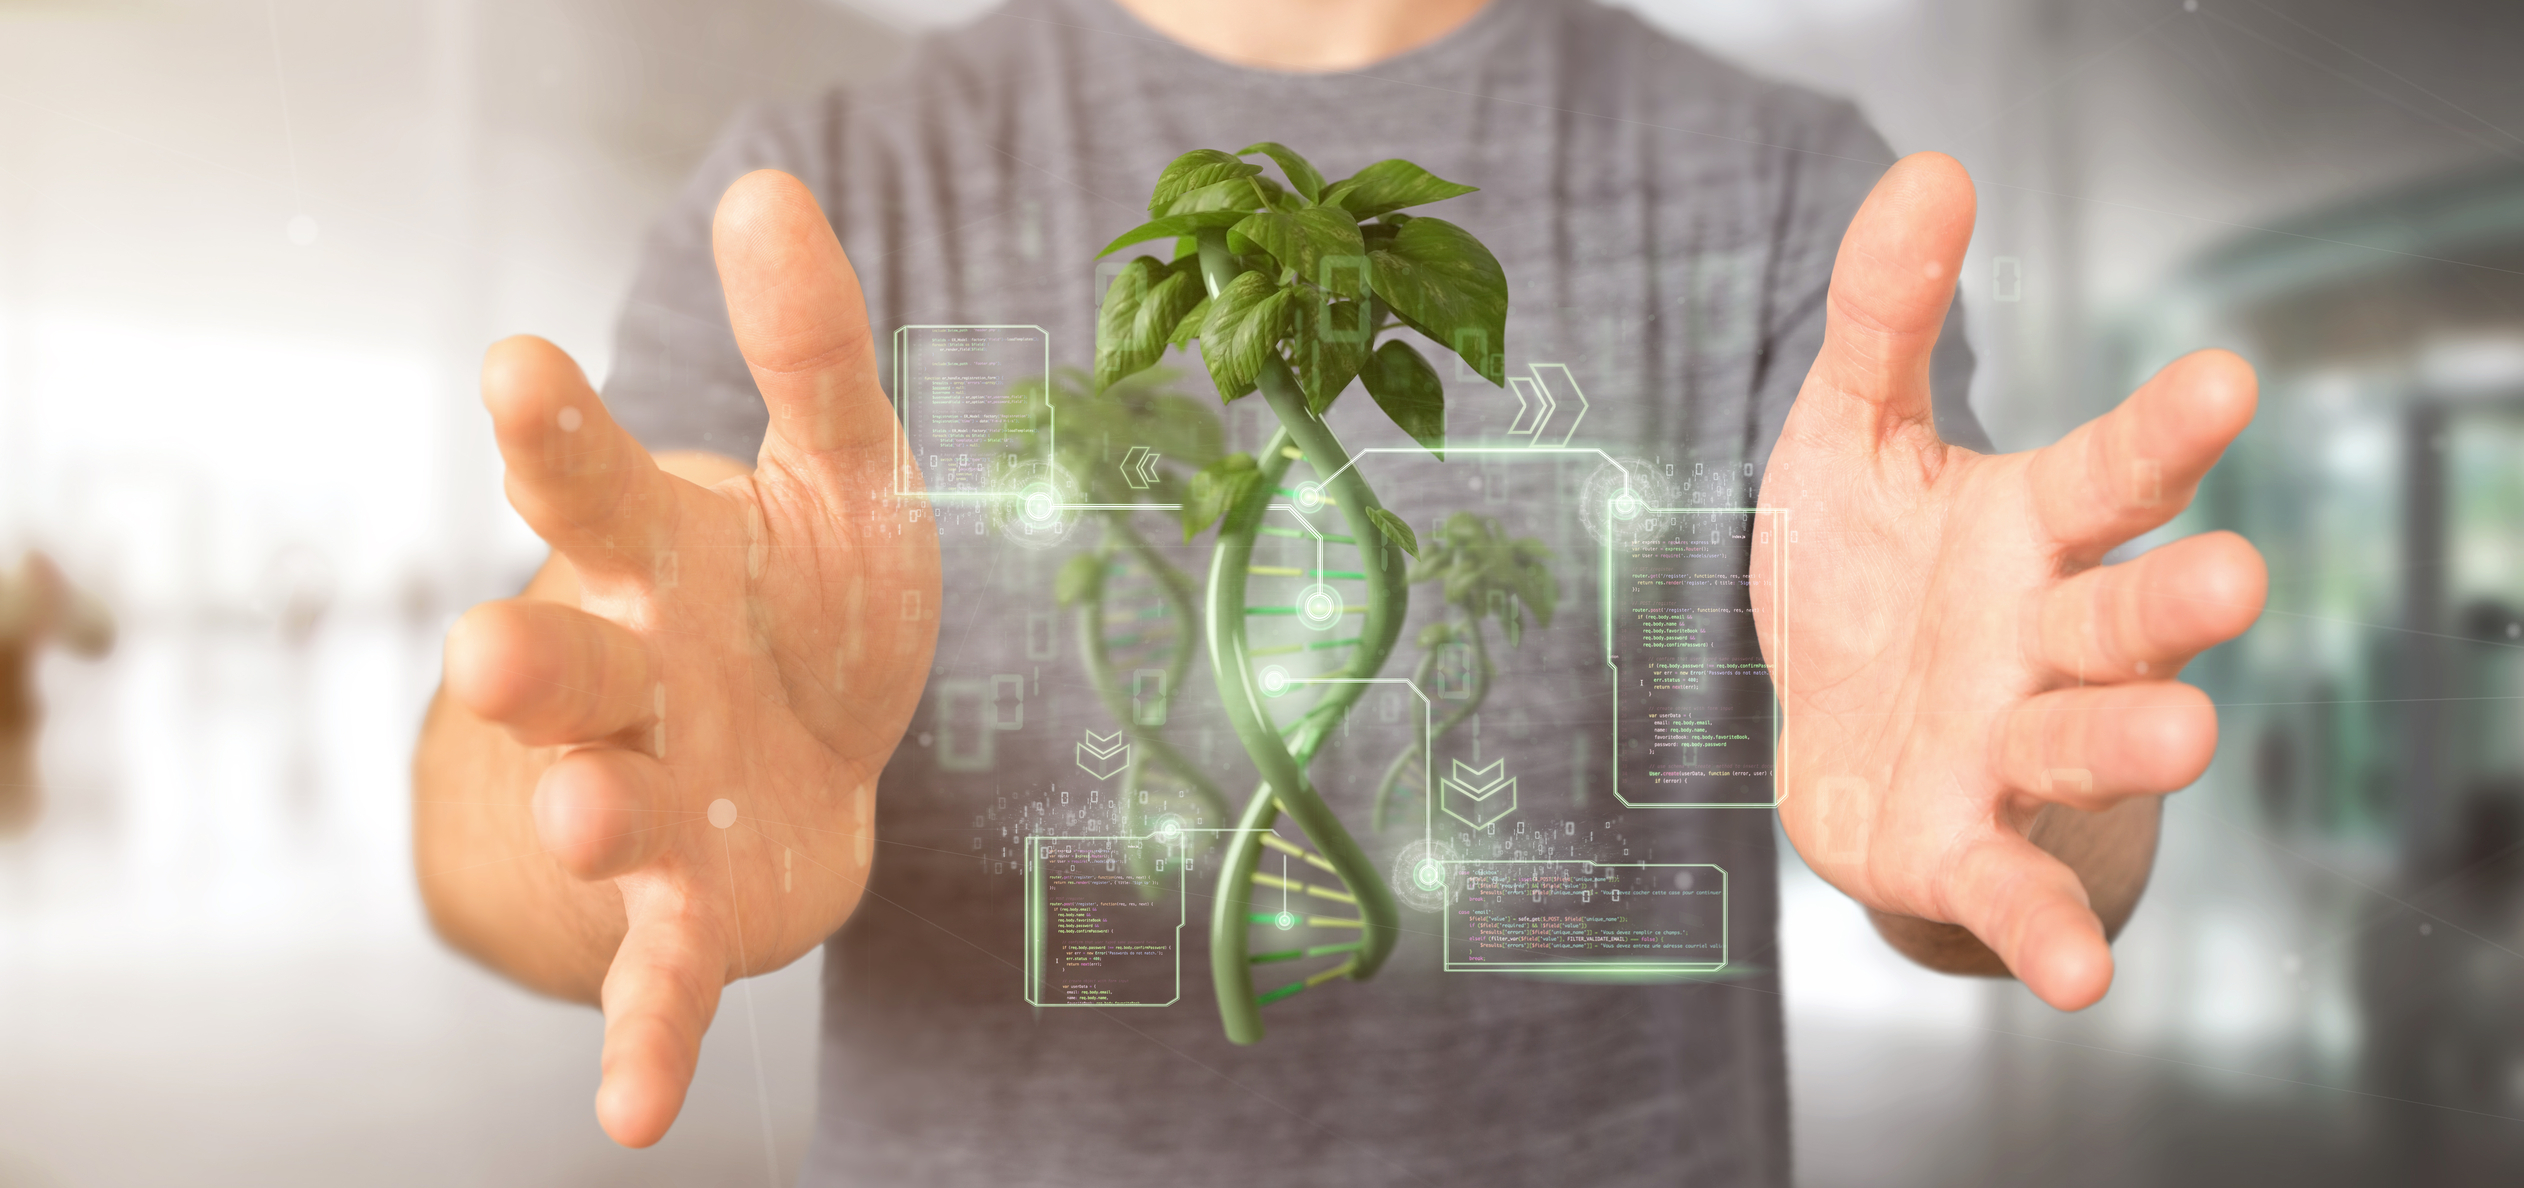 Nuove tecniche genetiche in agricoltura: conoscere un’innovazione per rafforzare il nostro sistema agroalimentare